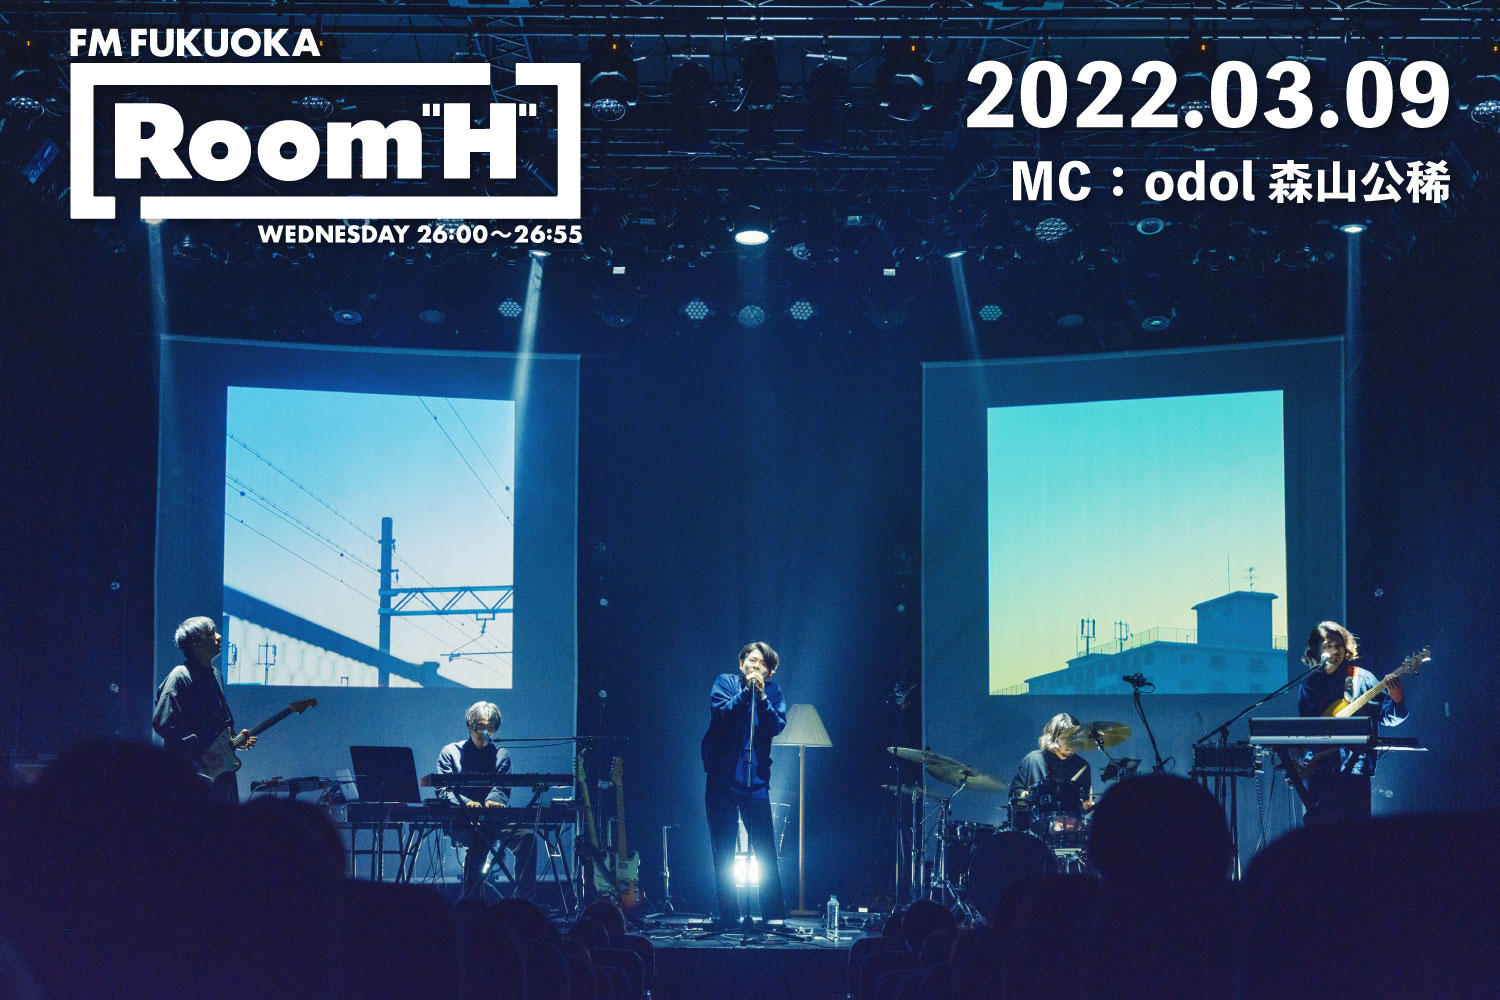 【読むラジオ】MC：森山公稀(odol) odolのサポートミュージシャンを紹介「Room H」 -2022.03.09-